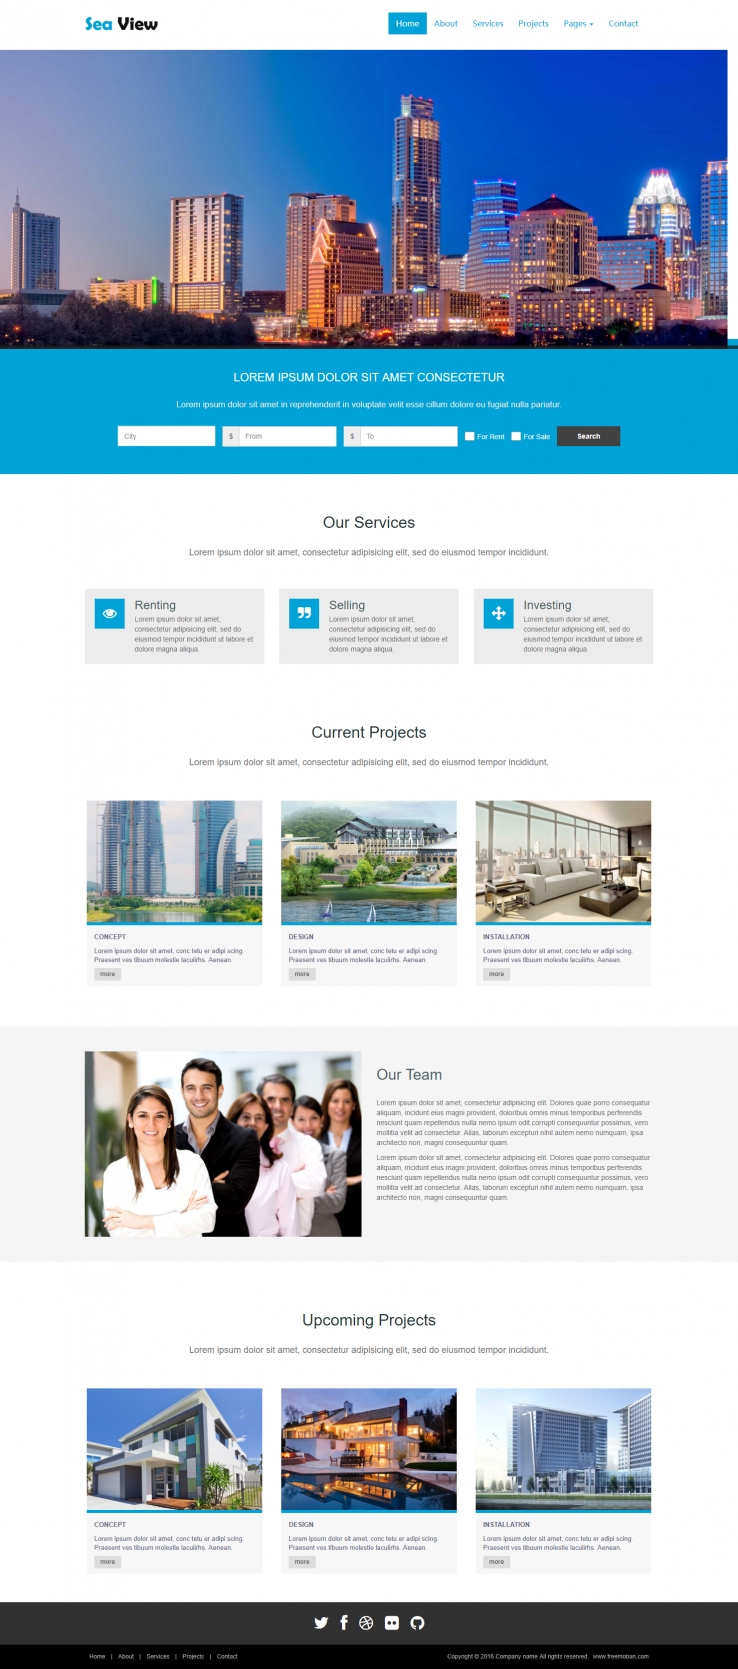 蓝色宽屏风格的海景别墅设计企业网站模板